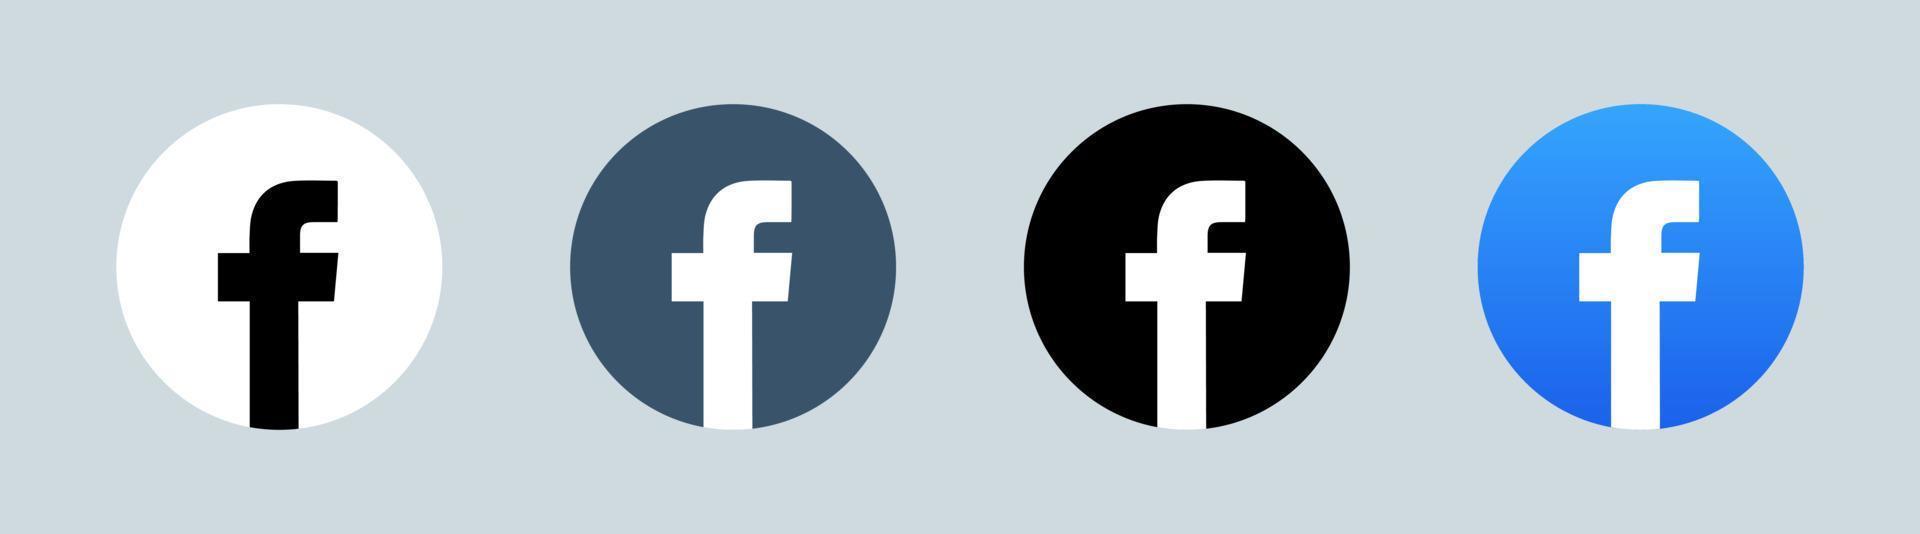 Facebook-logotyp i cirkelform. populär logotyp för sociala medier. vektor